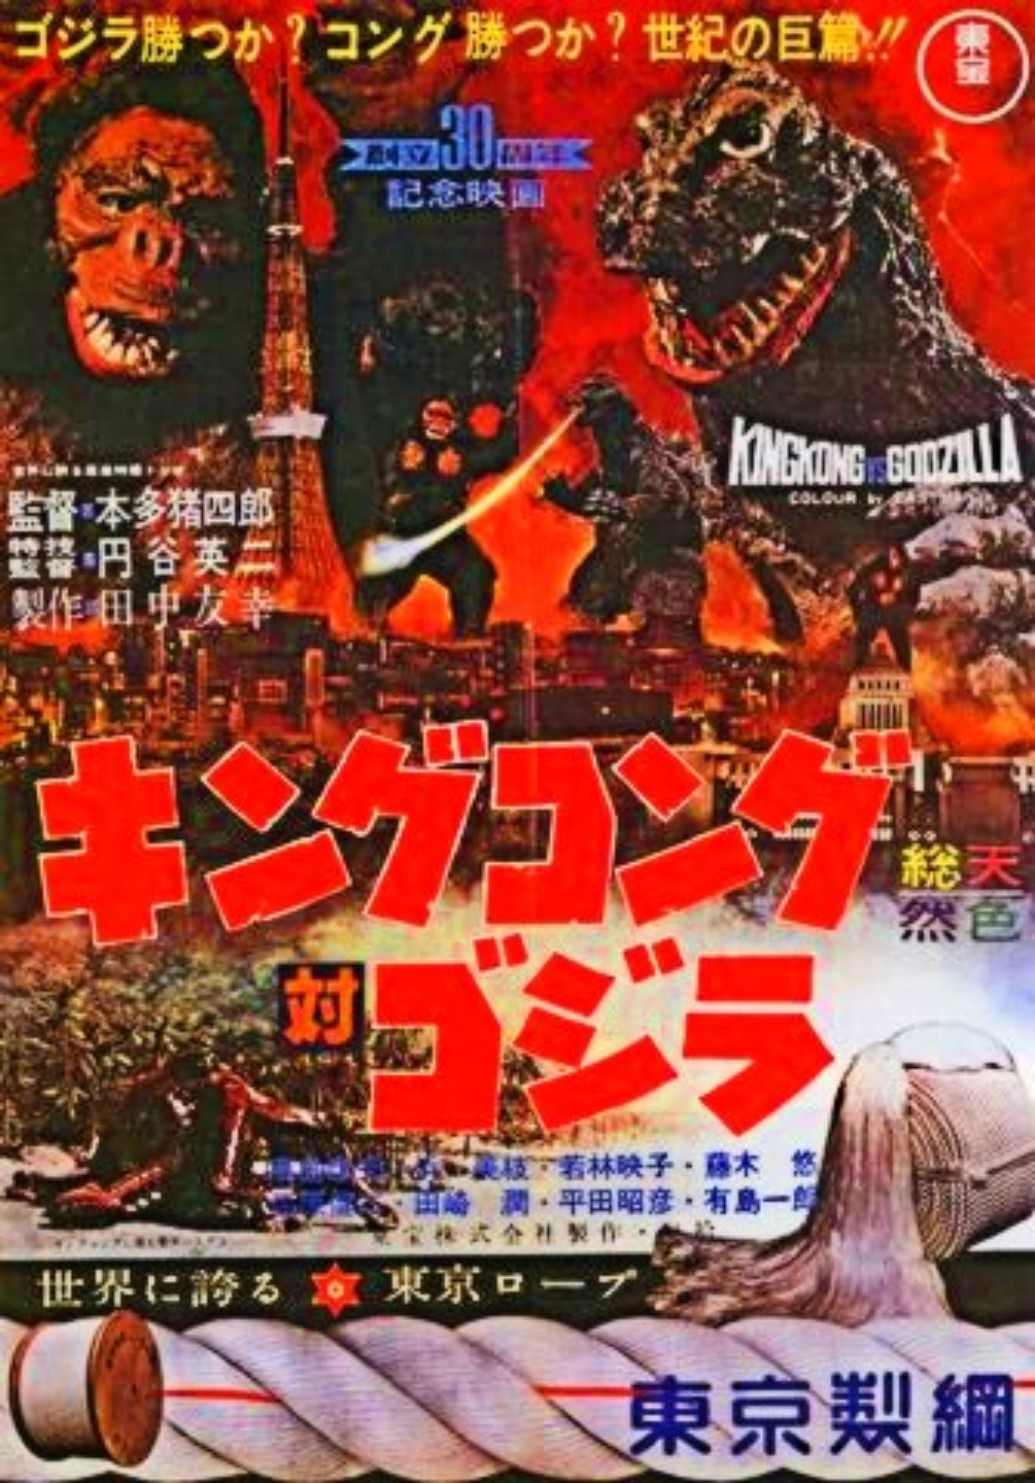 Godzilla kingkong vs Download free